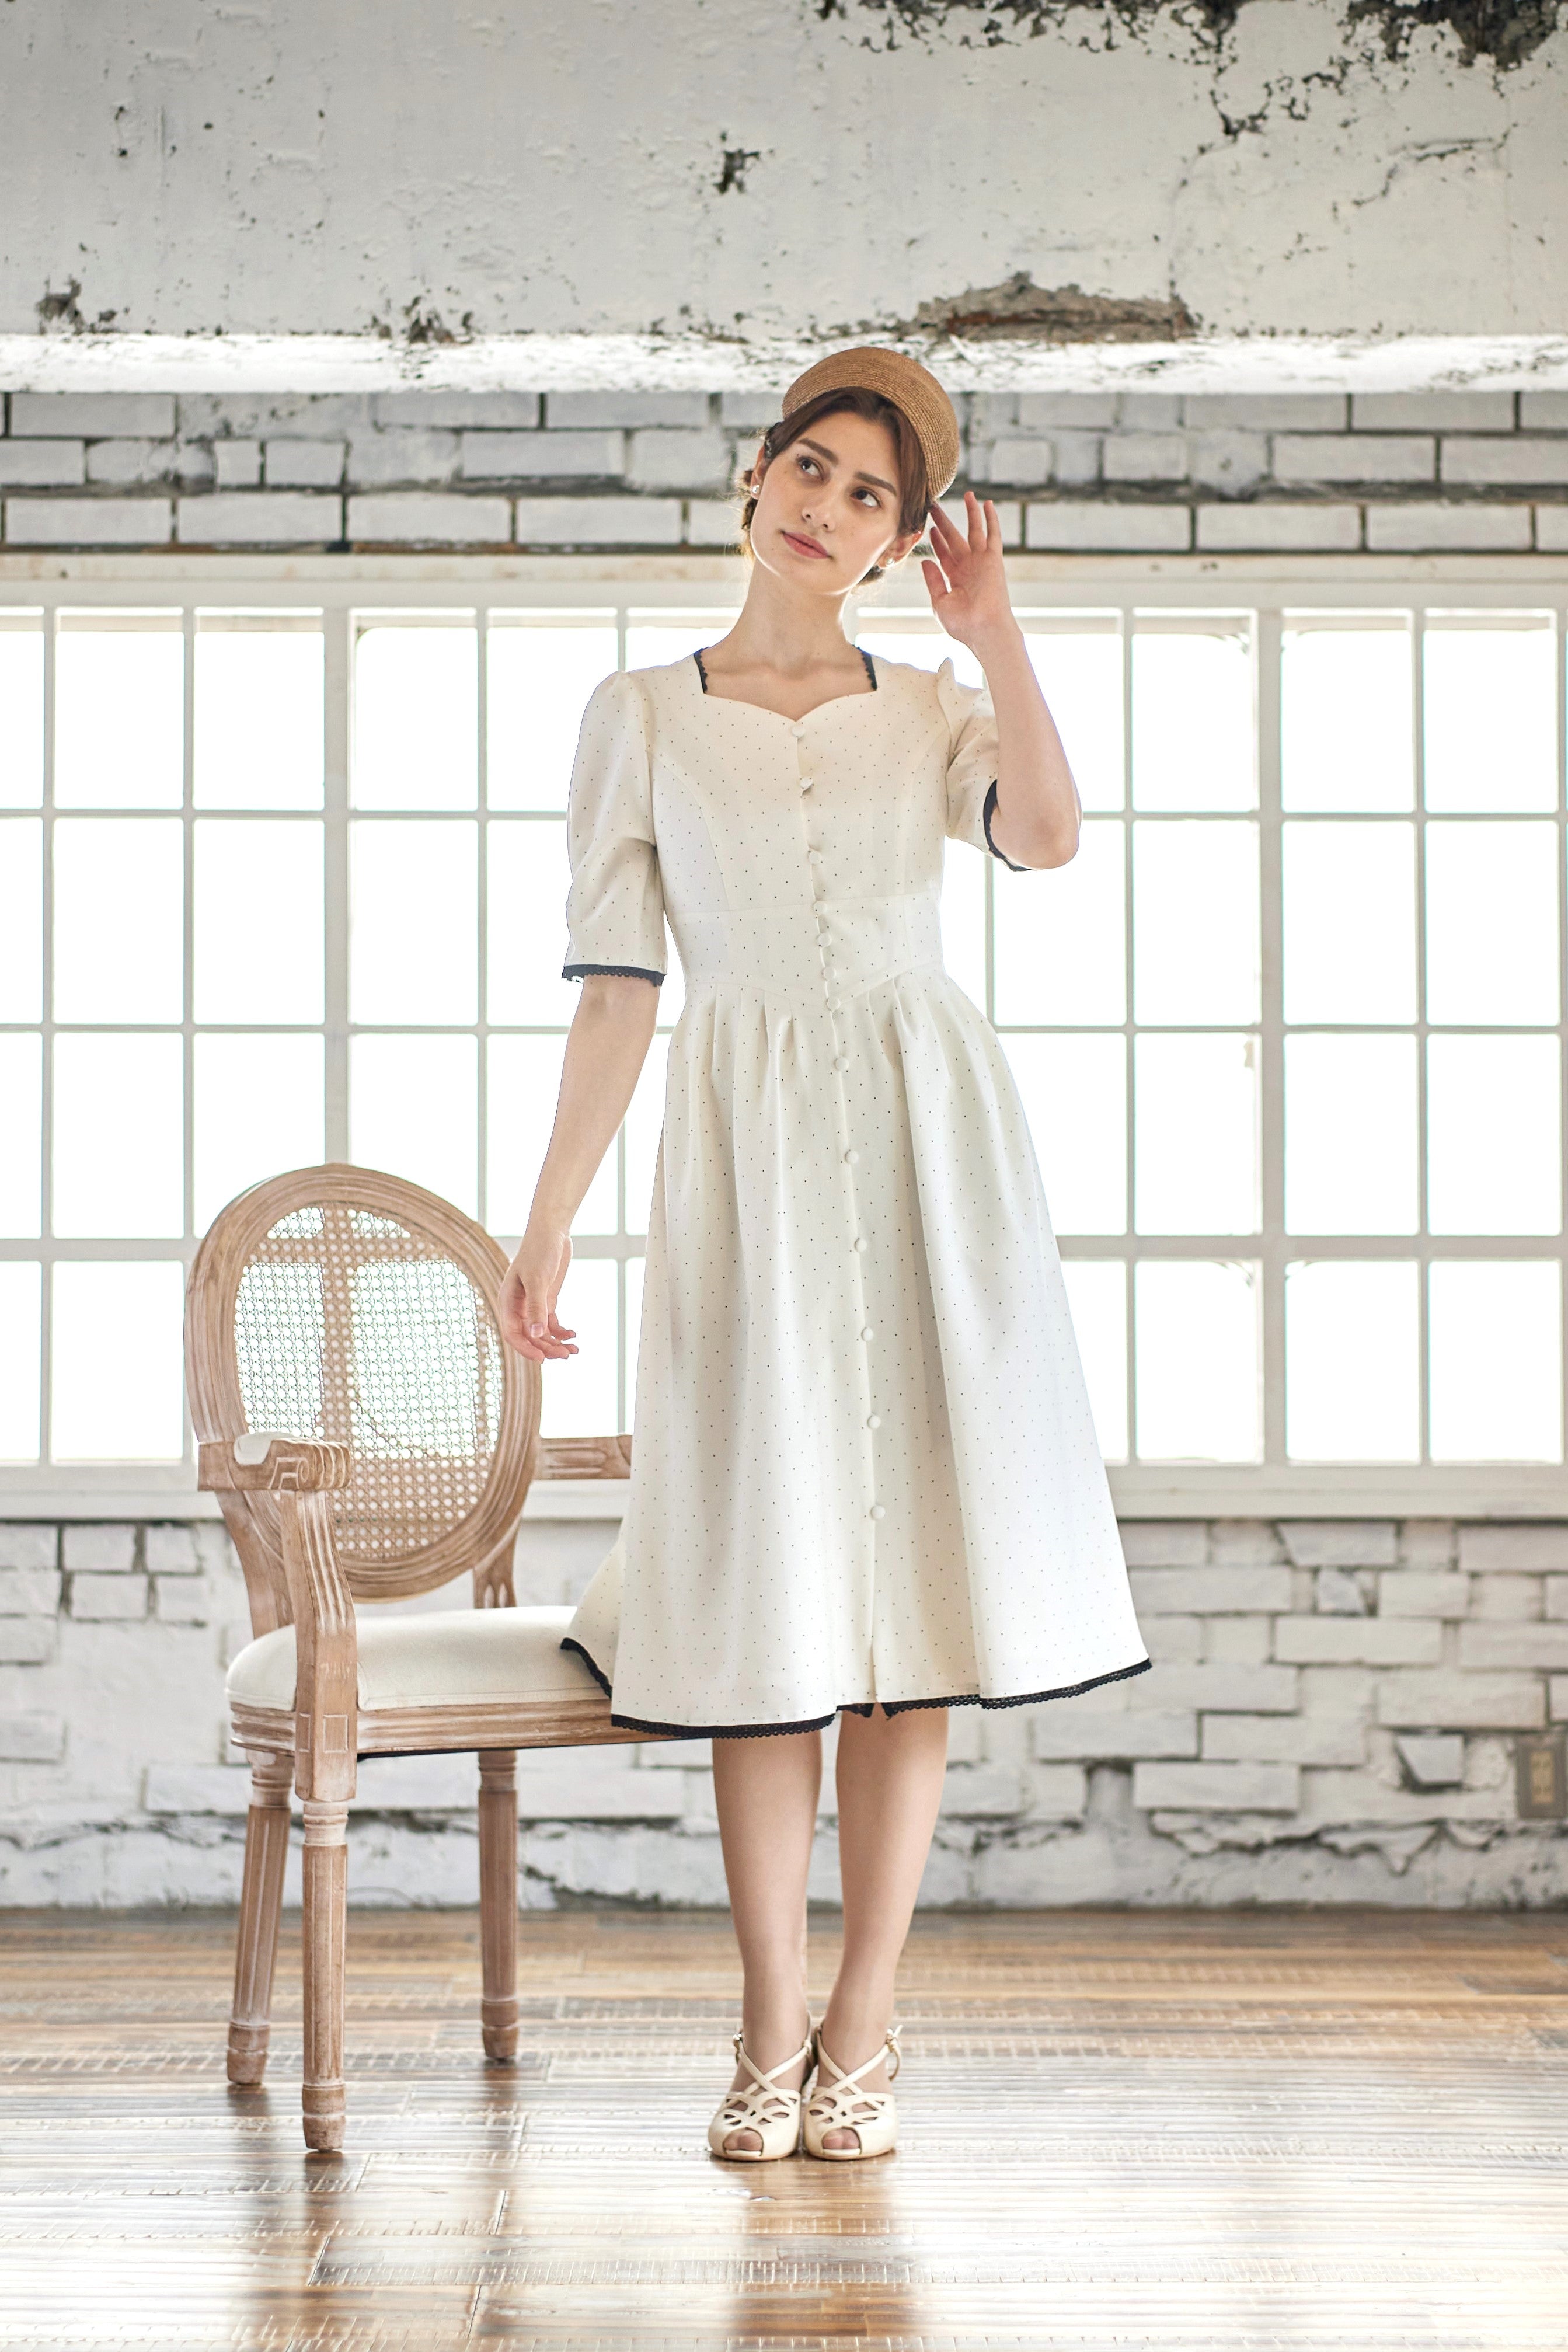 One-piece dress – Filvoir